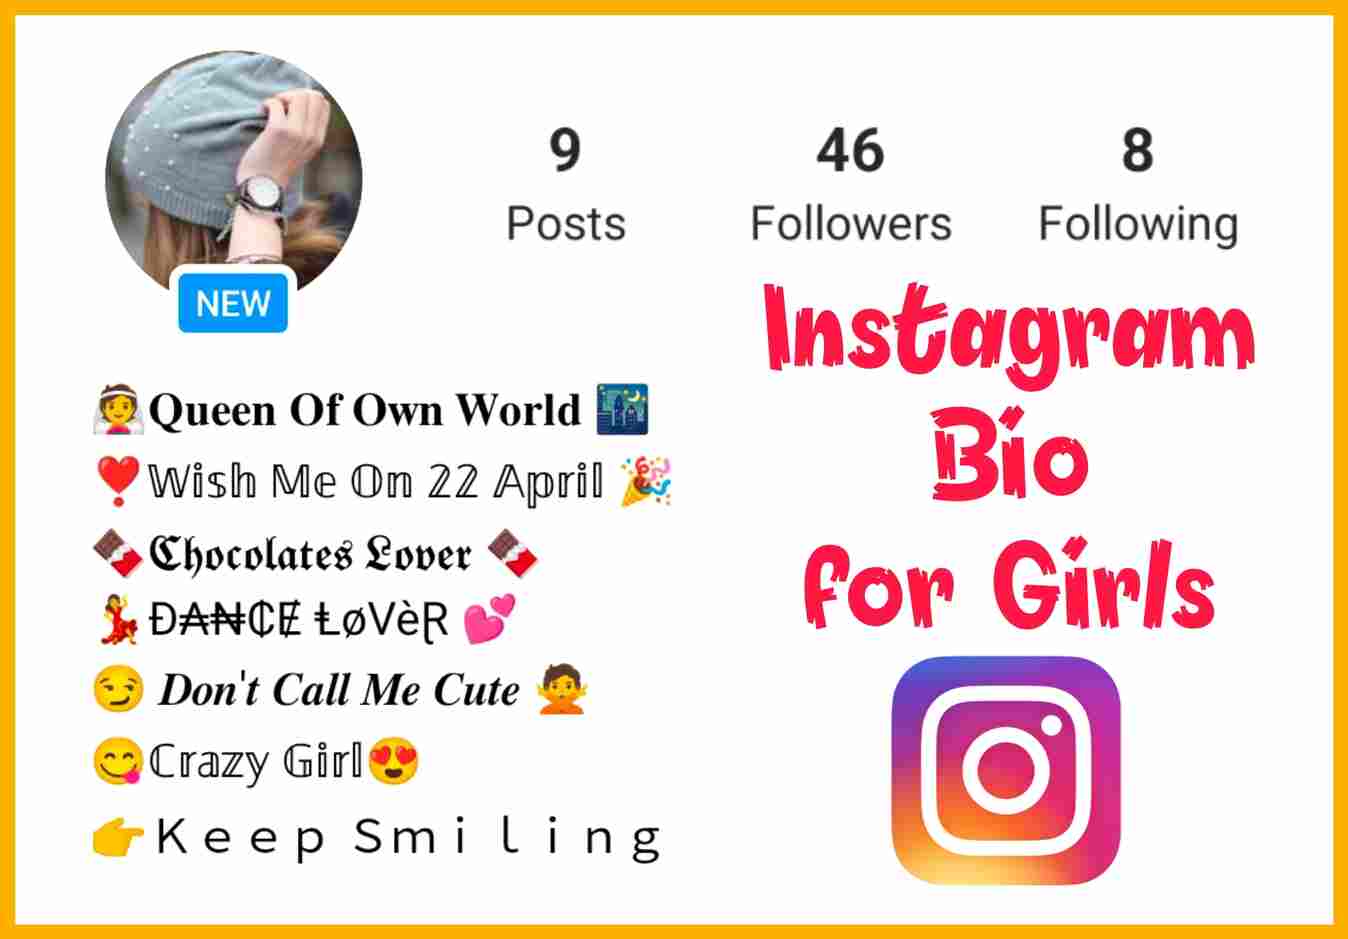 biography for girl on instagram